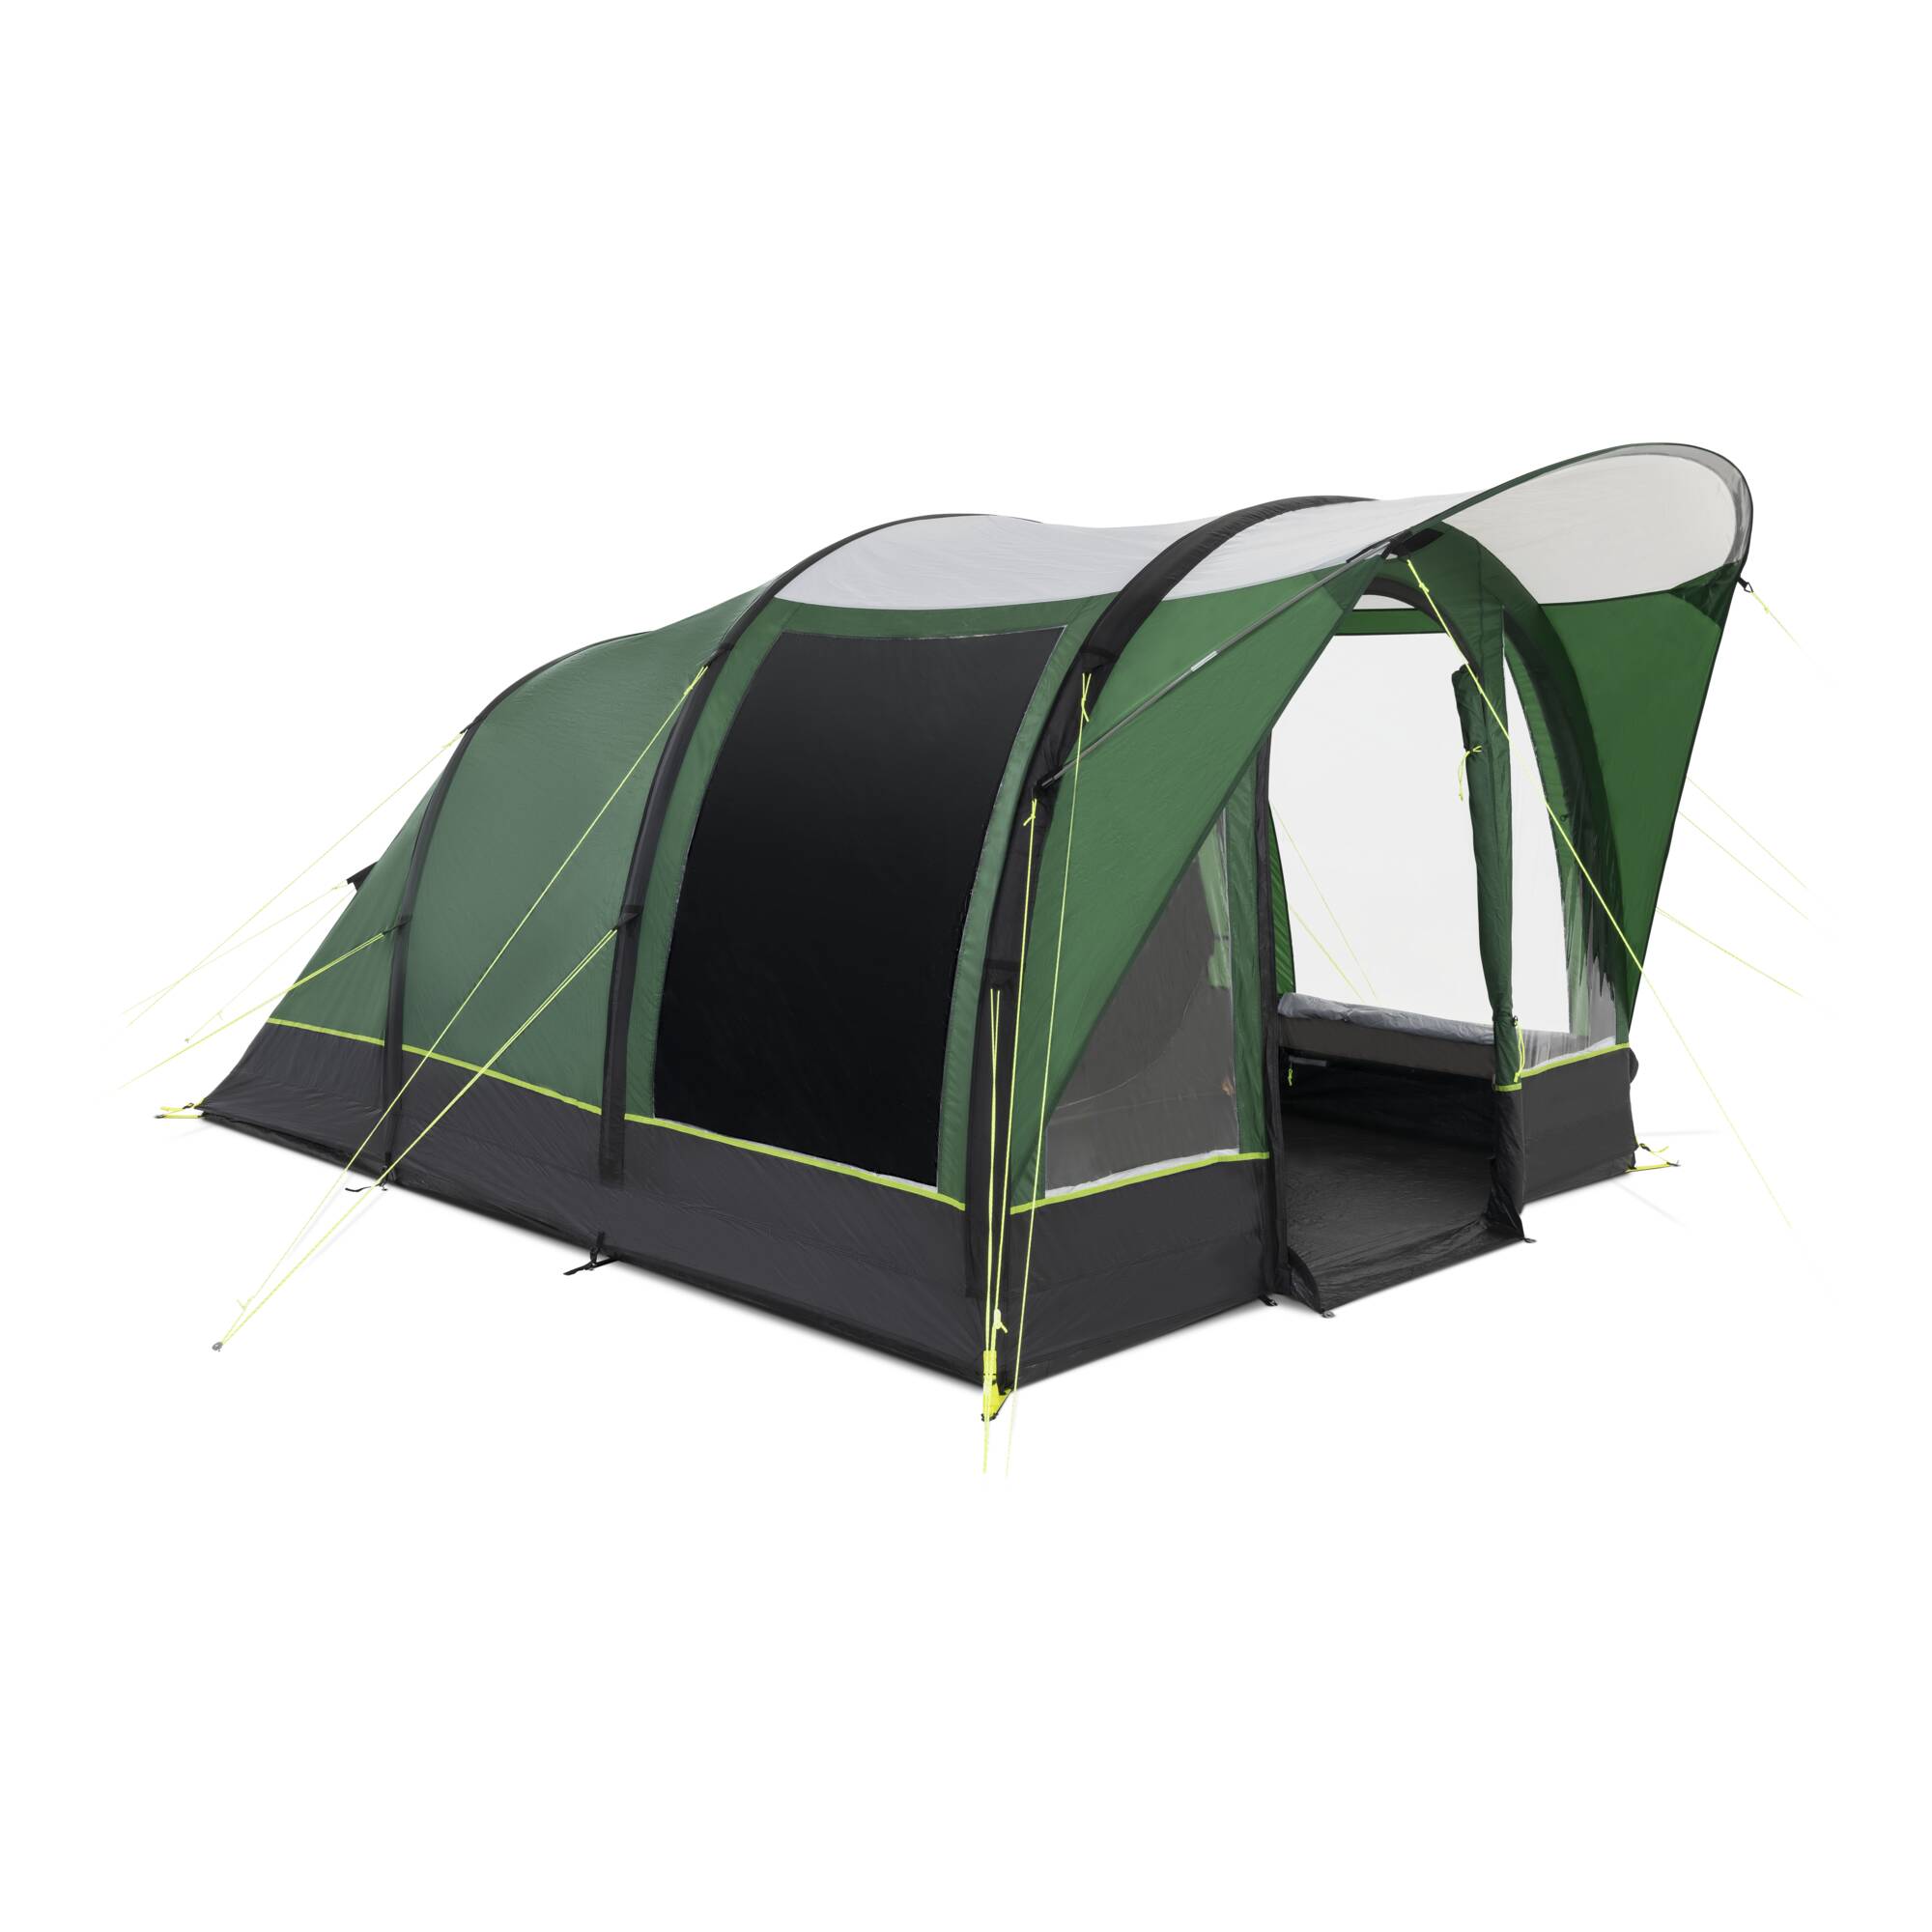 Dometic Brean 4 Tent Spare Parts